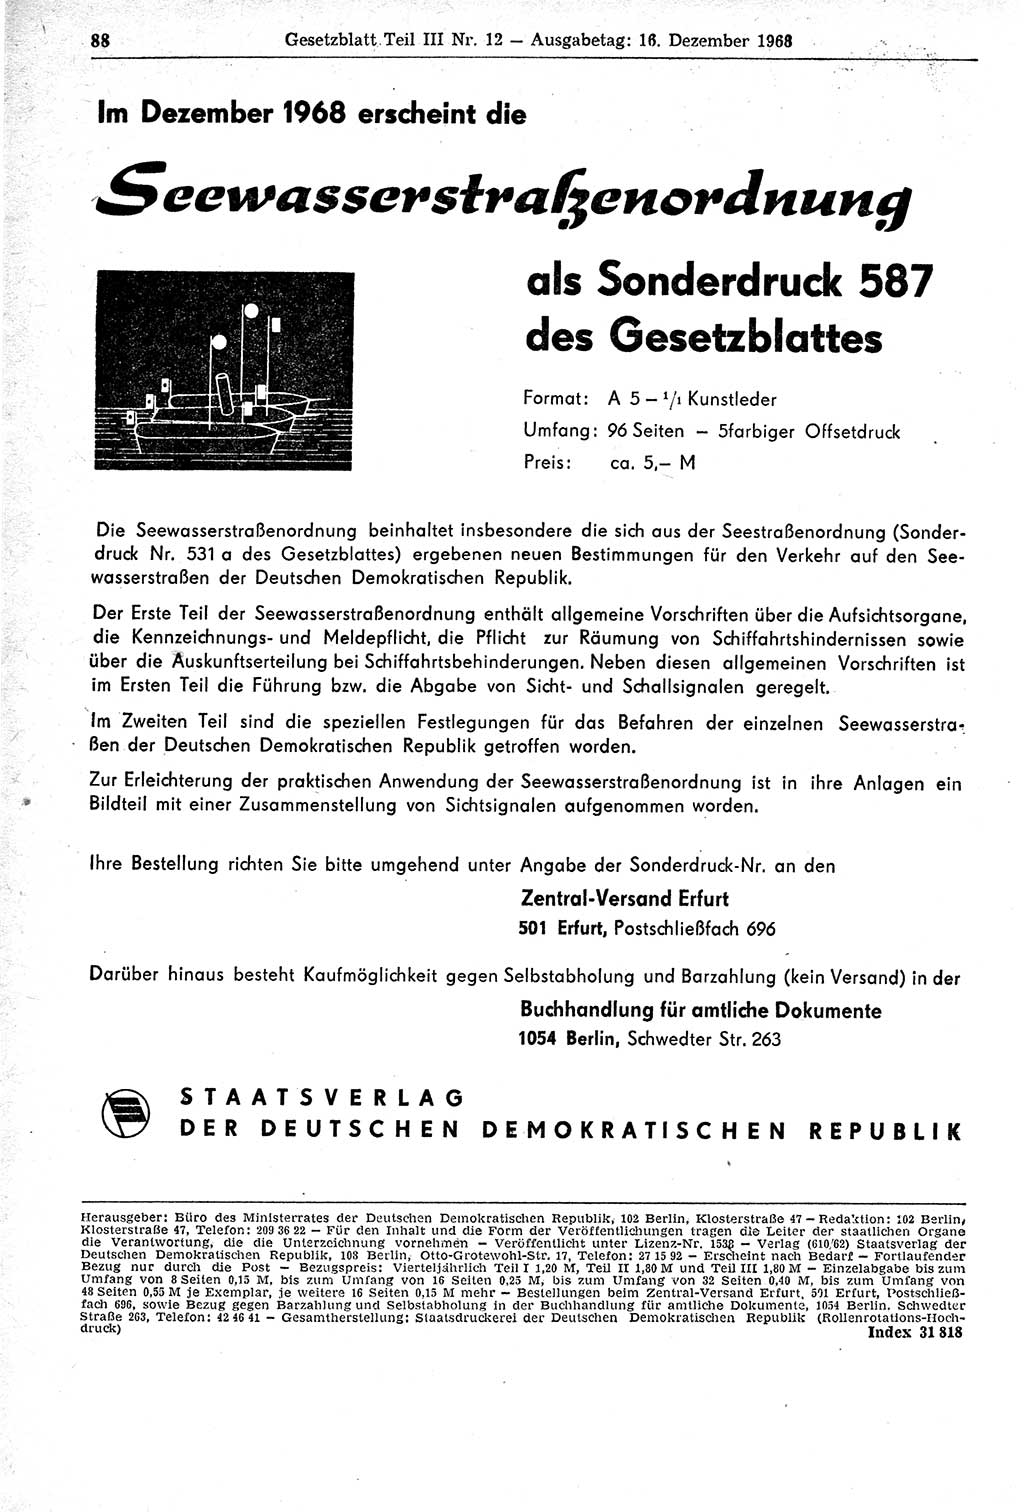 Gesetzblatt (GBl.) der Deutschen Demokratischen Republik (DDR) Teil ⅠⅠⅠ 1968, Seite 88 (GBl. DDR ⅠⅠⅠ 1968, S. 88)